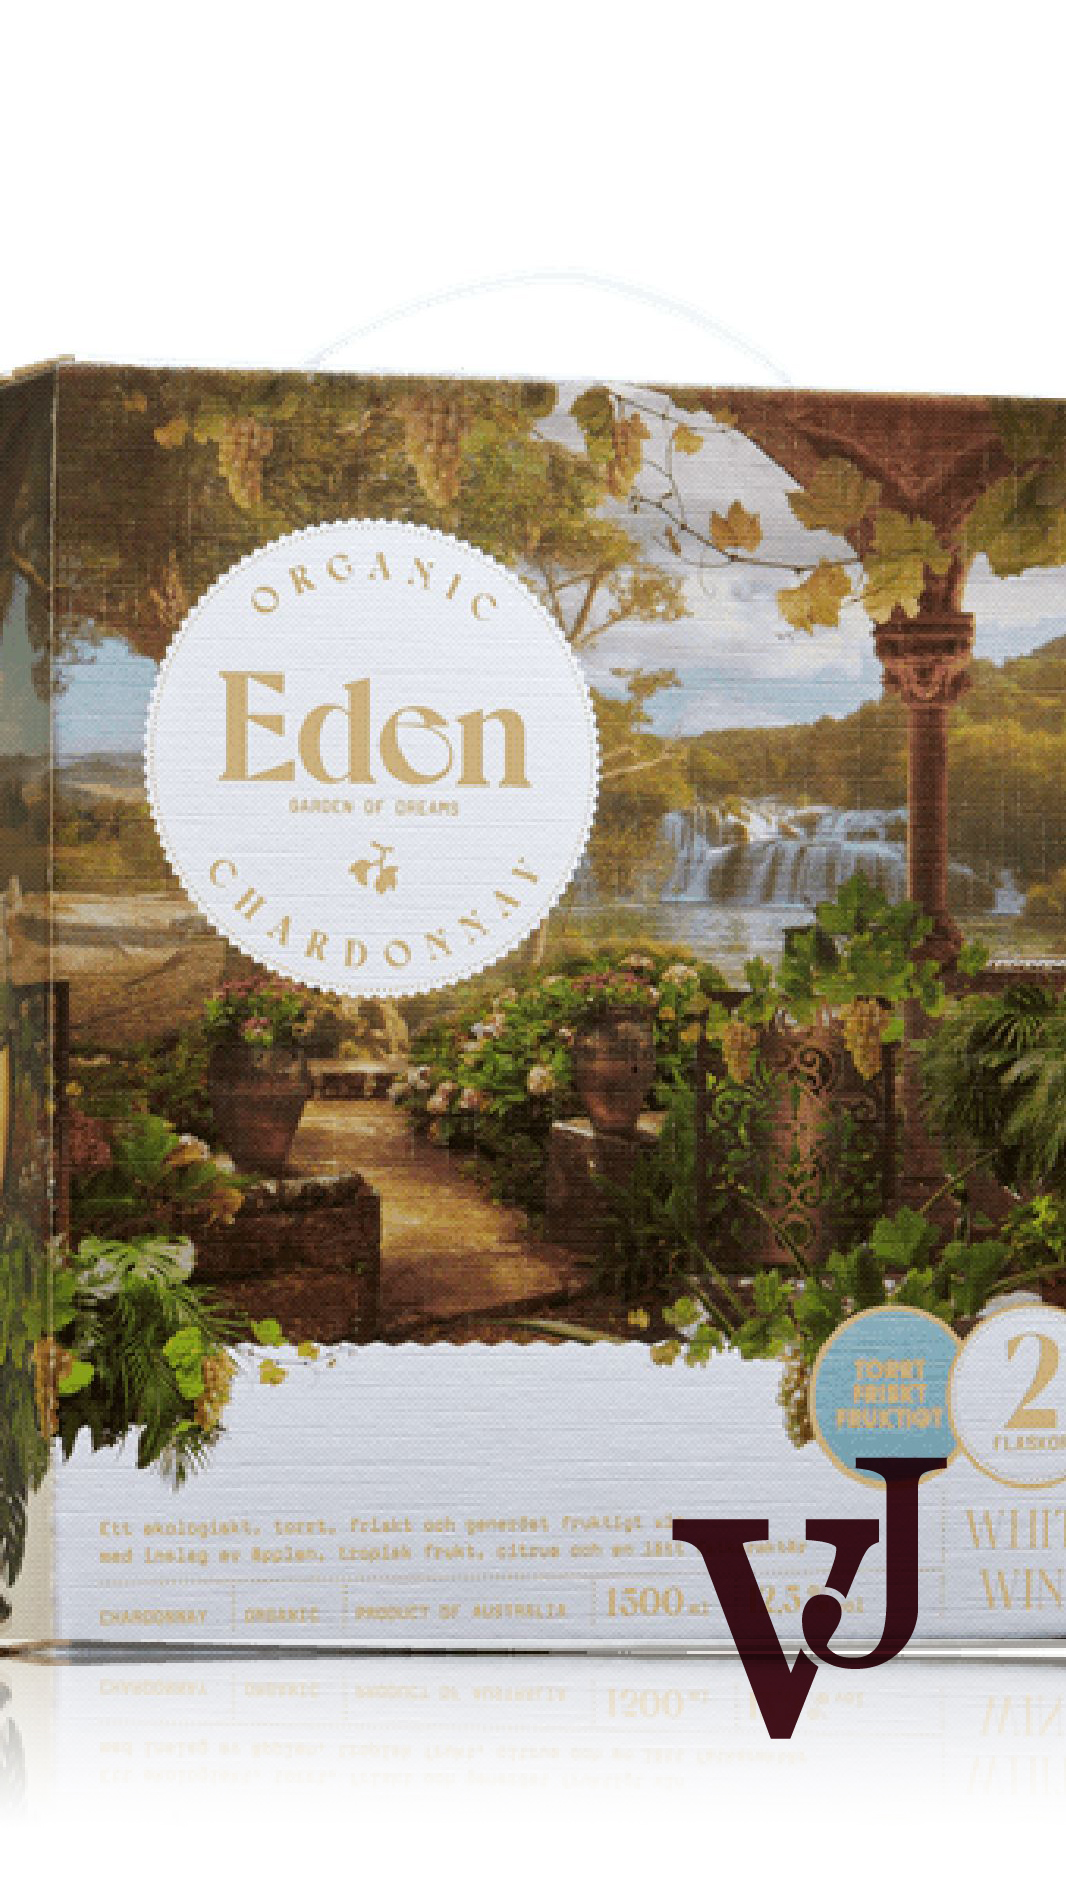 Vitt Vin - Eden Garden of Dreams artikel nummer 262707 från producenten Quarisa Wines från området Australien - Vinjournalen.se